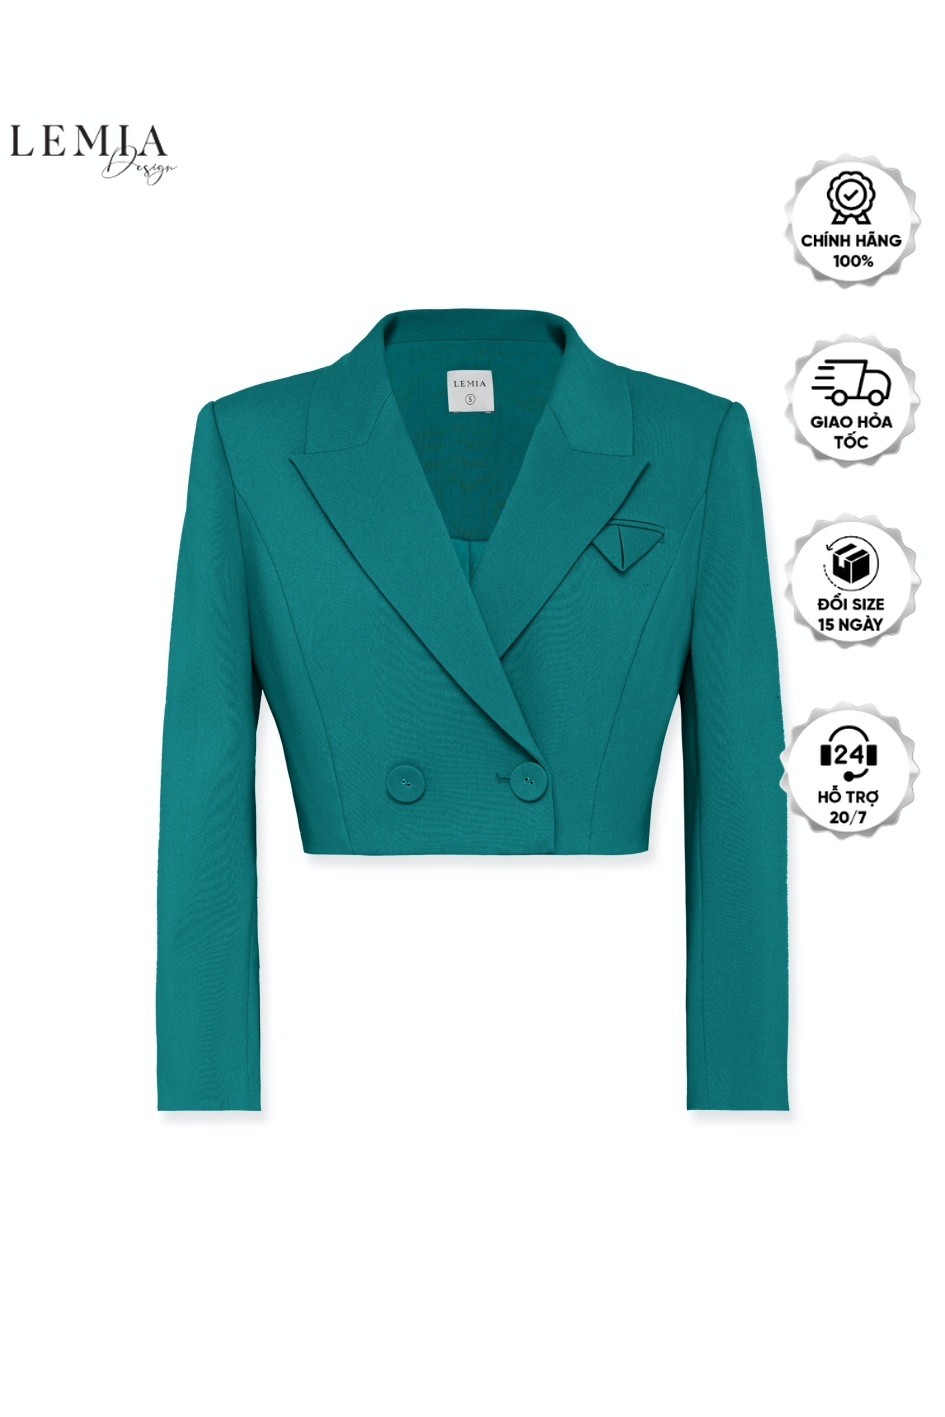 [VOUCHER 12%/149K] Áo Vest Nữ Lửng Dài Tay Thời Trang Công Sở By LEMIA Design - 22AV046